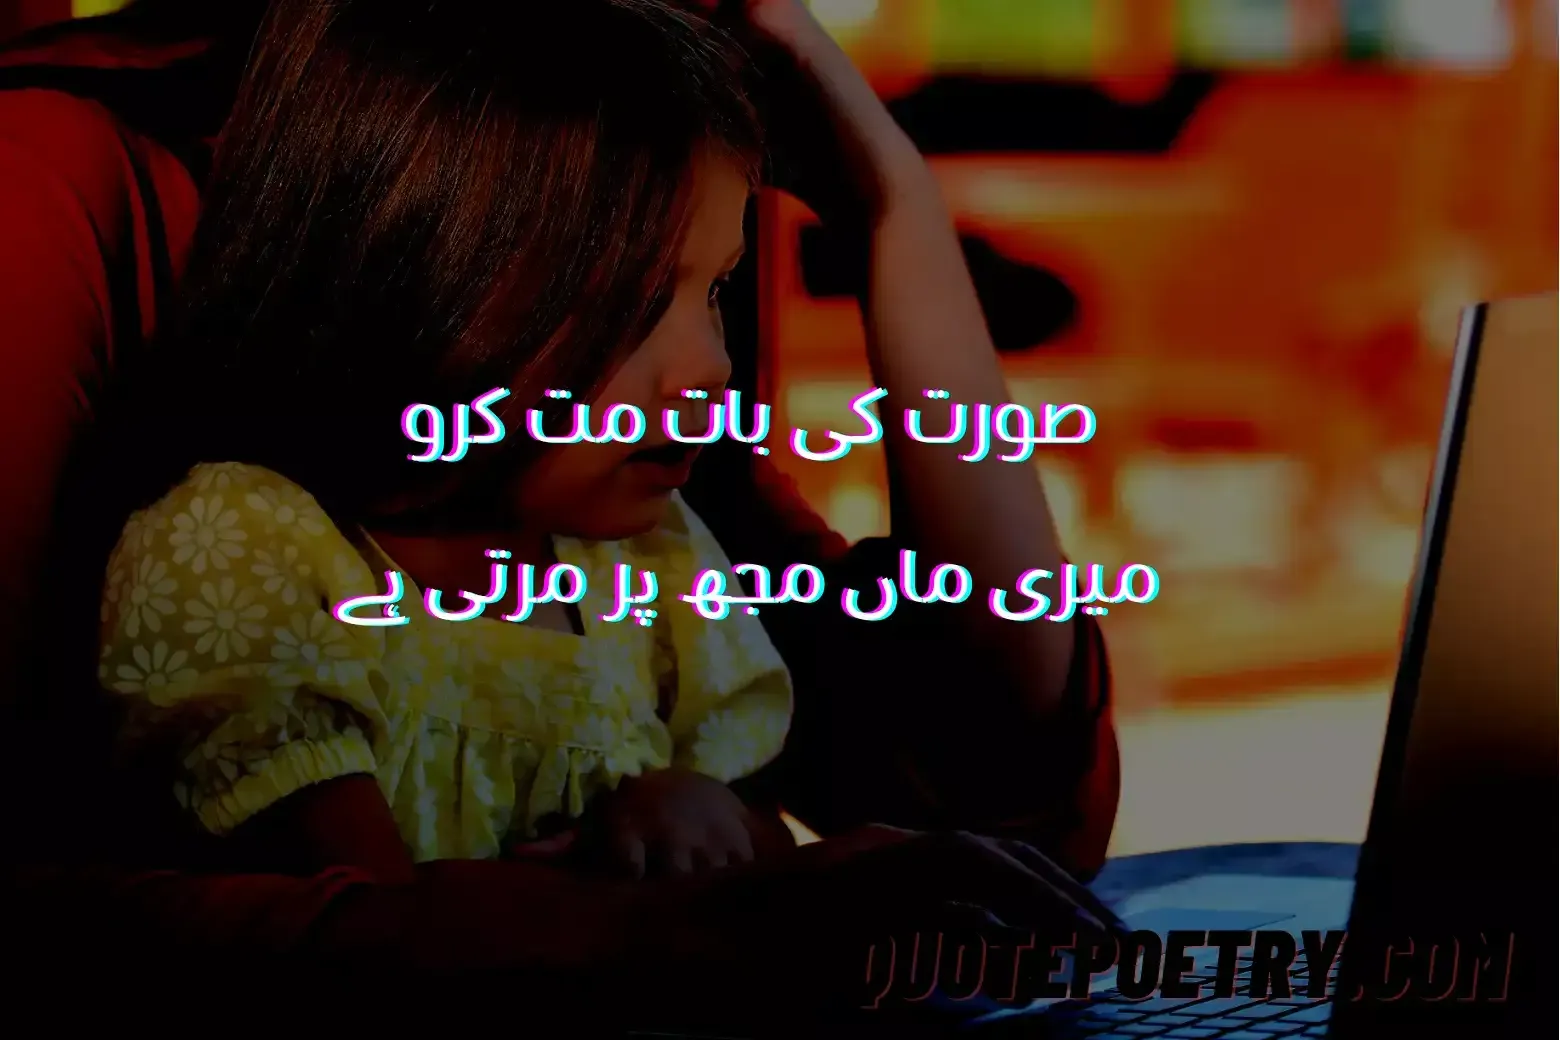 Poetry About Parents - Urdu Maa Baap Poetry - Maa Baap Shayari